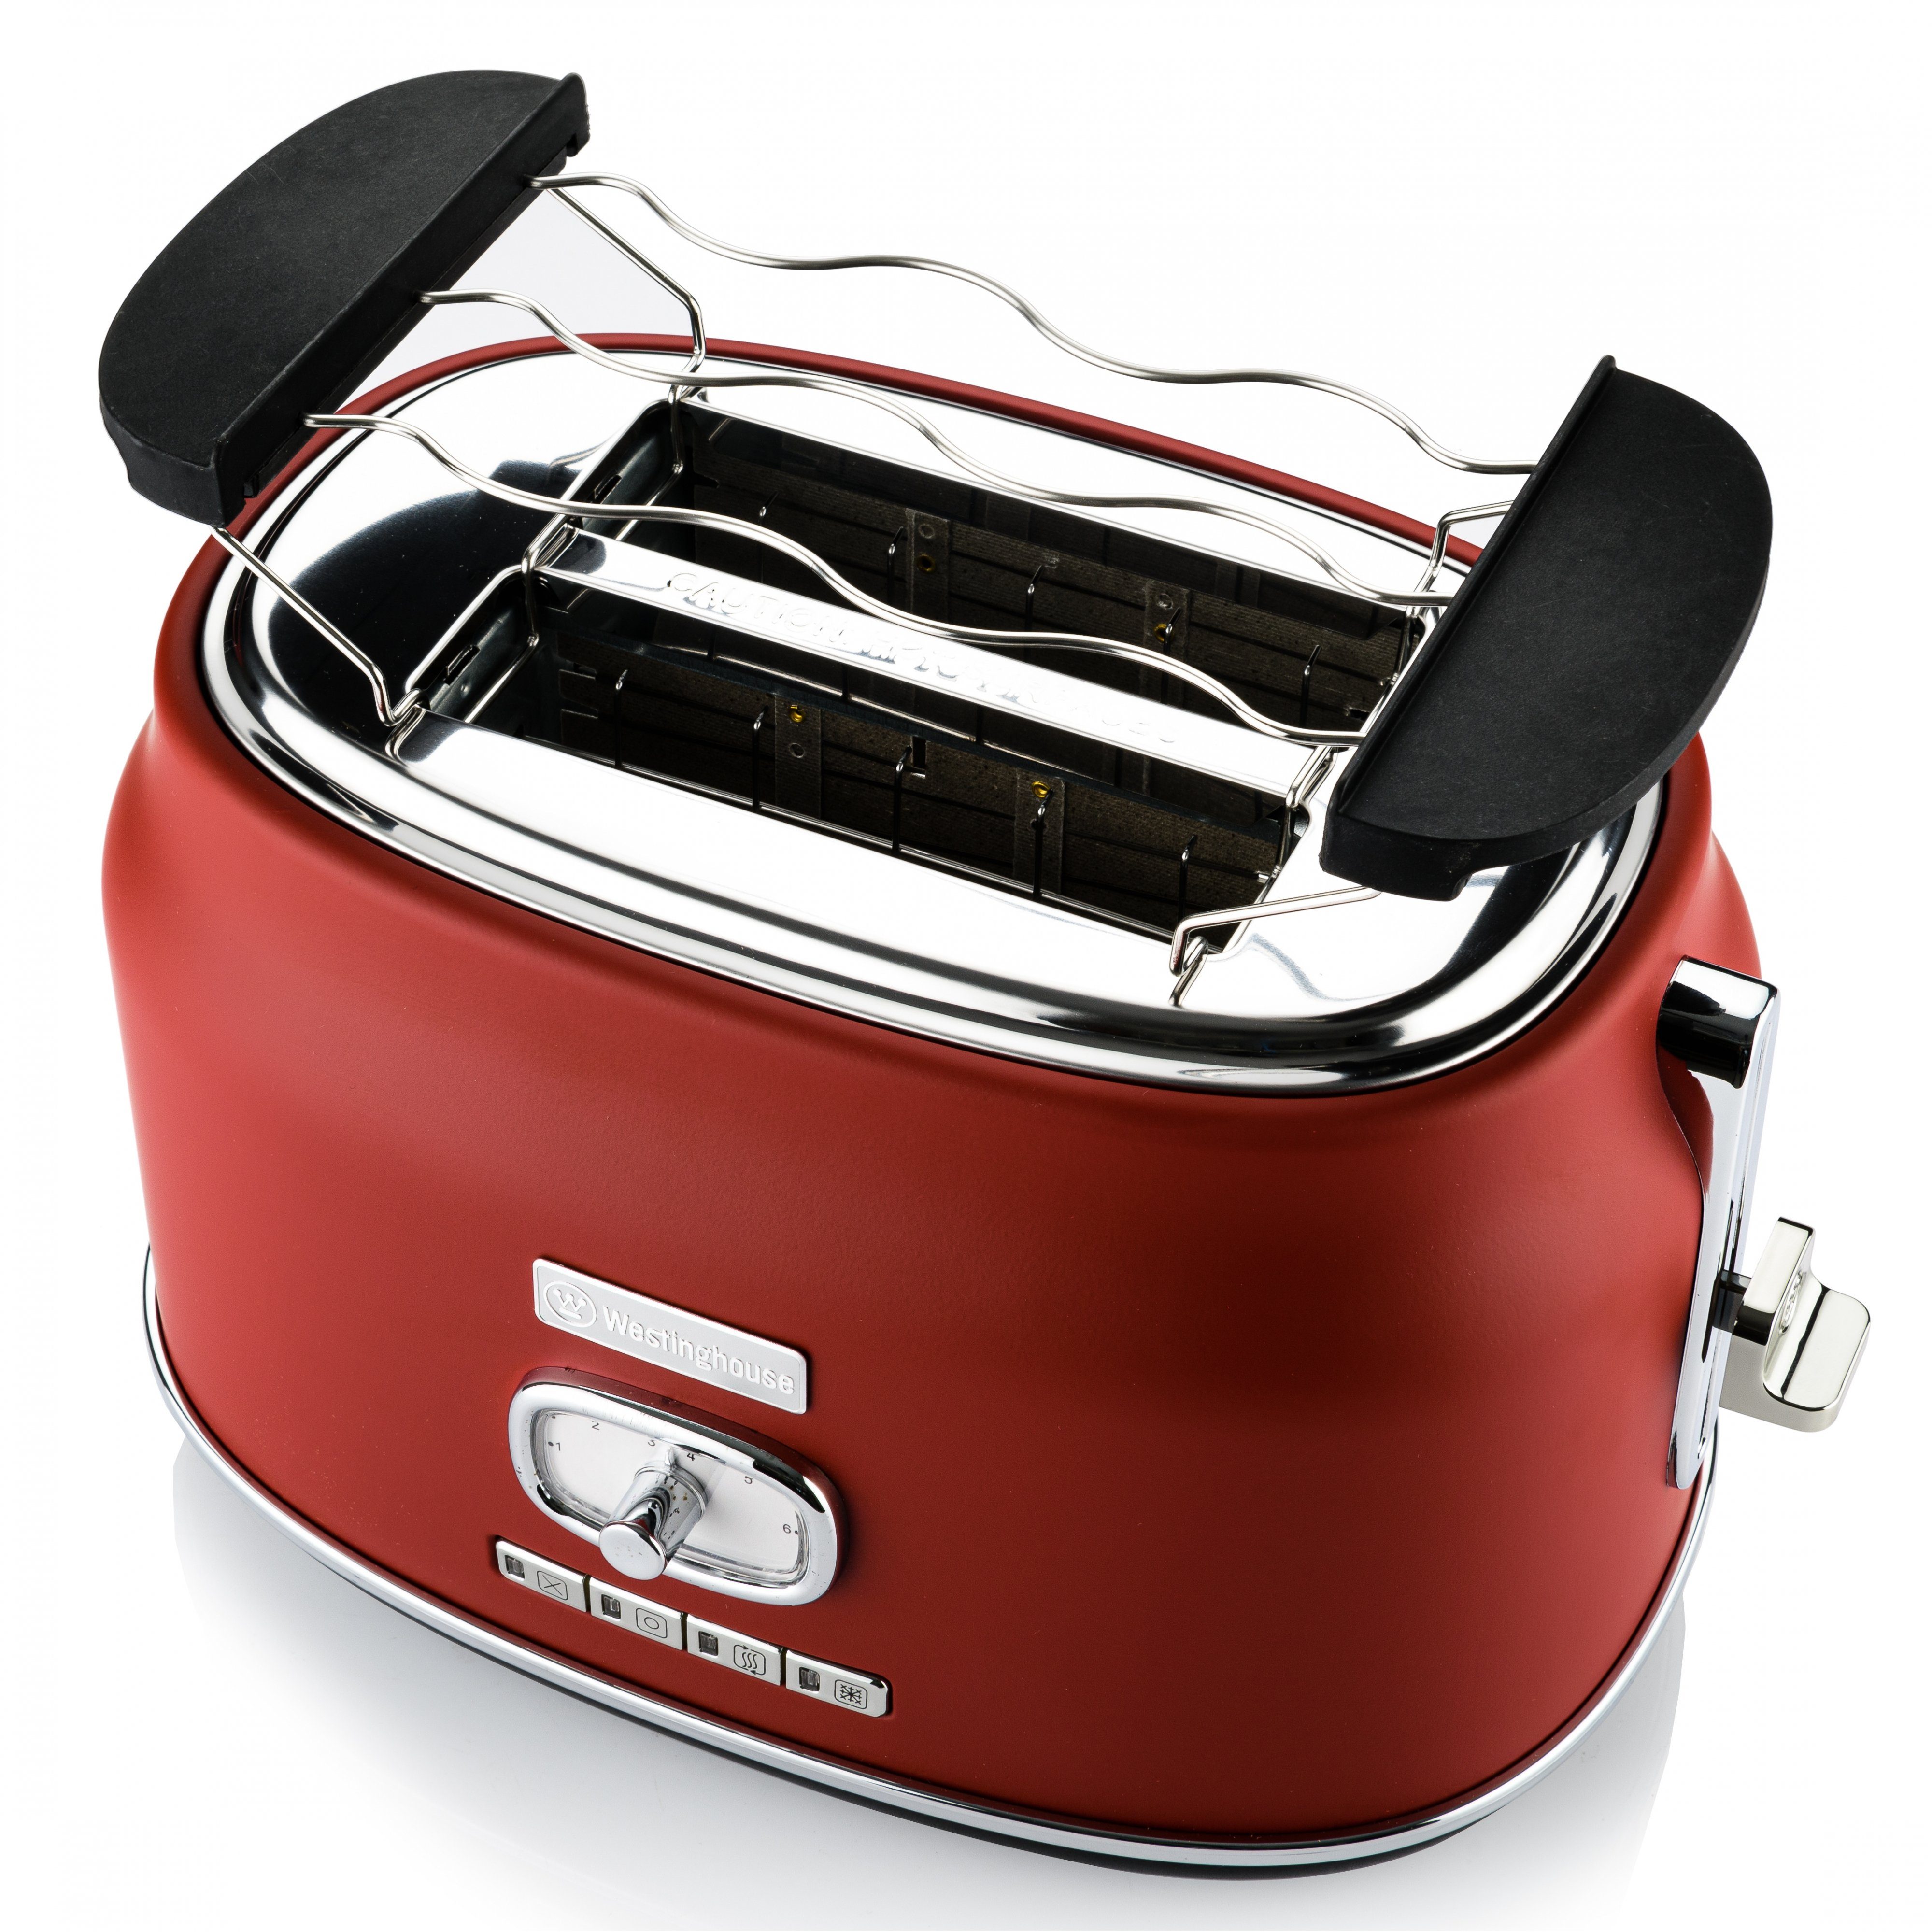 Toaster 2200 L 815 Wasserkocher W, Scheiben, Retro Westinghouse Sockel kurze für 1,7 Schlitze, rot 2 2 360° W Früstücksset, Volumen